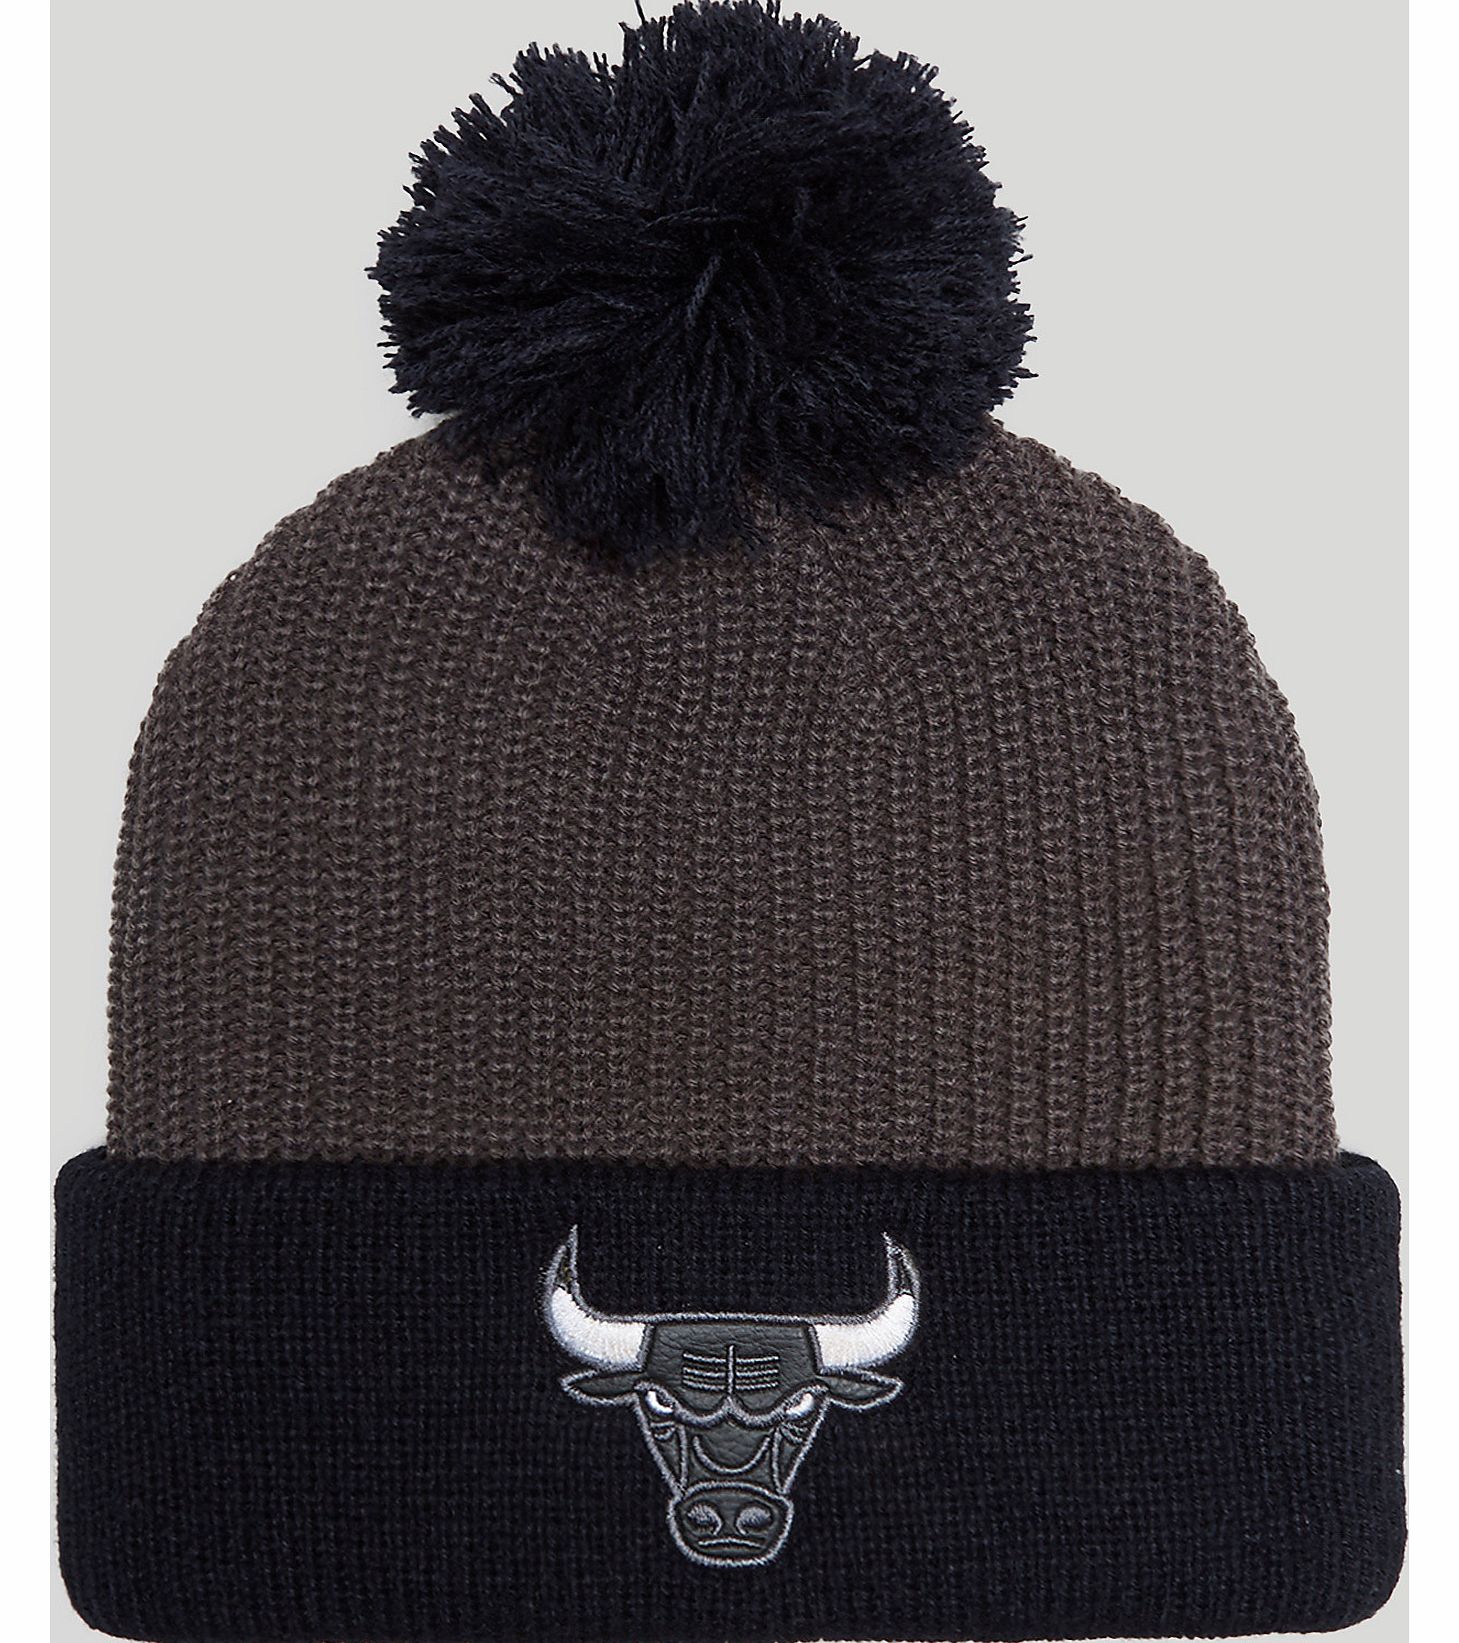 Chicago Bulls Marshall Beanie Hat